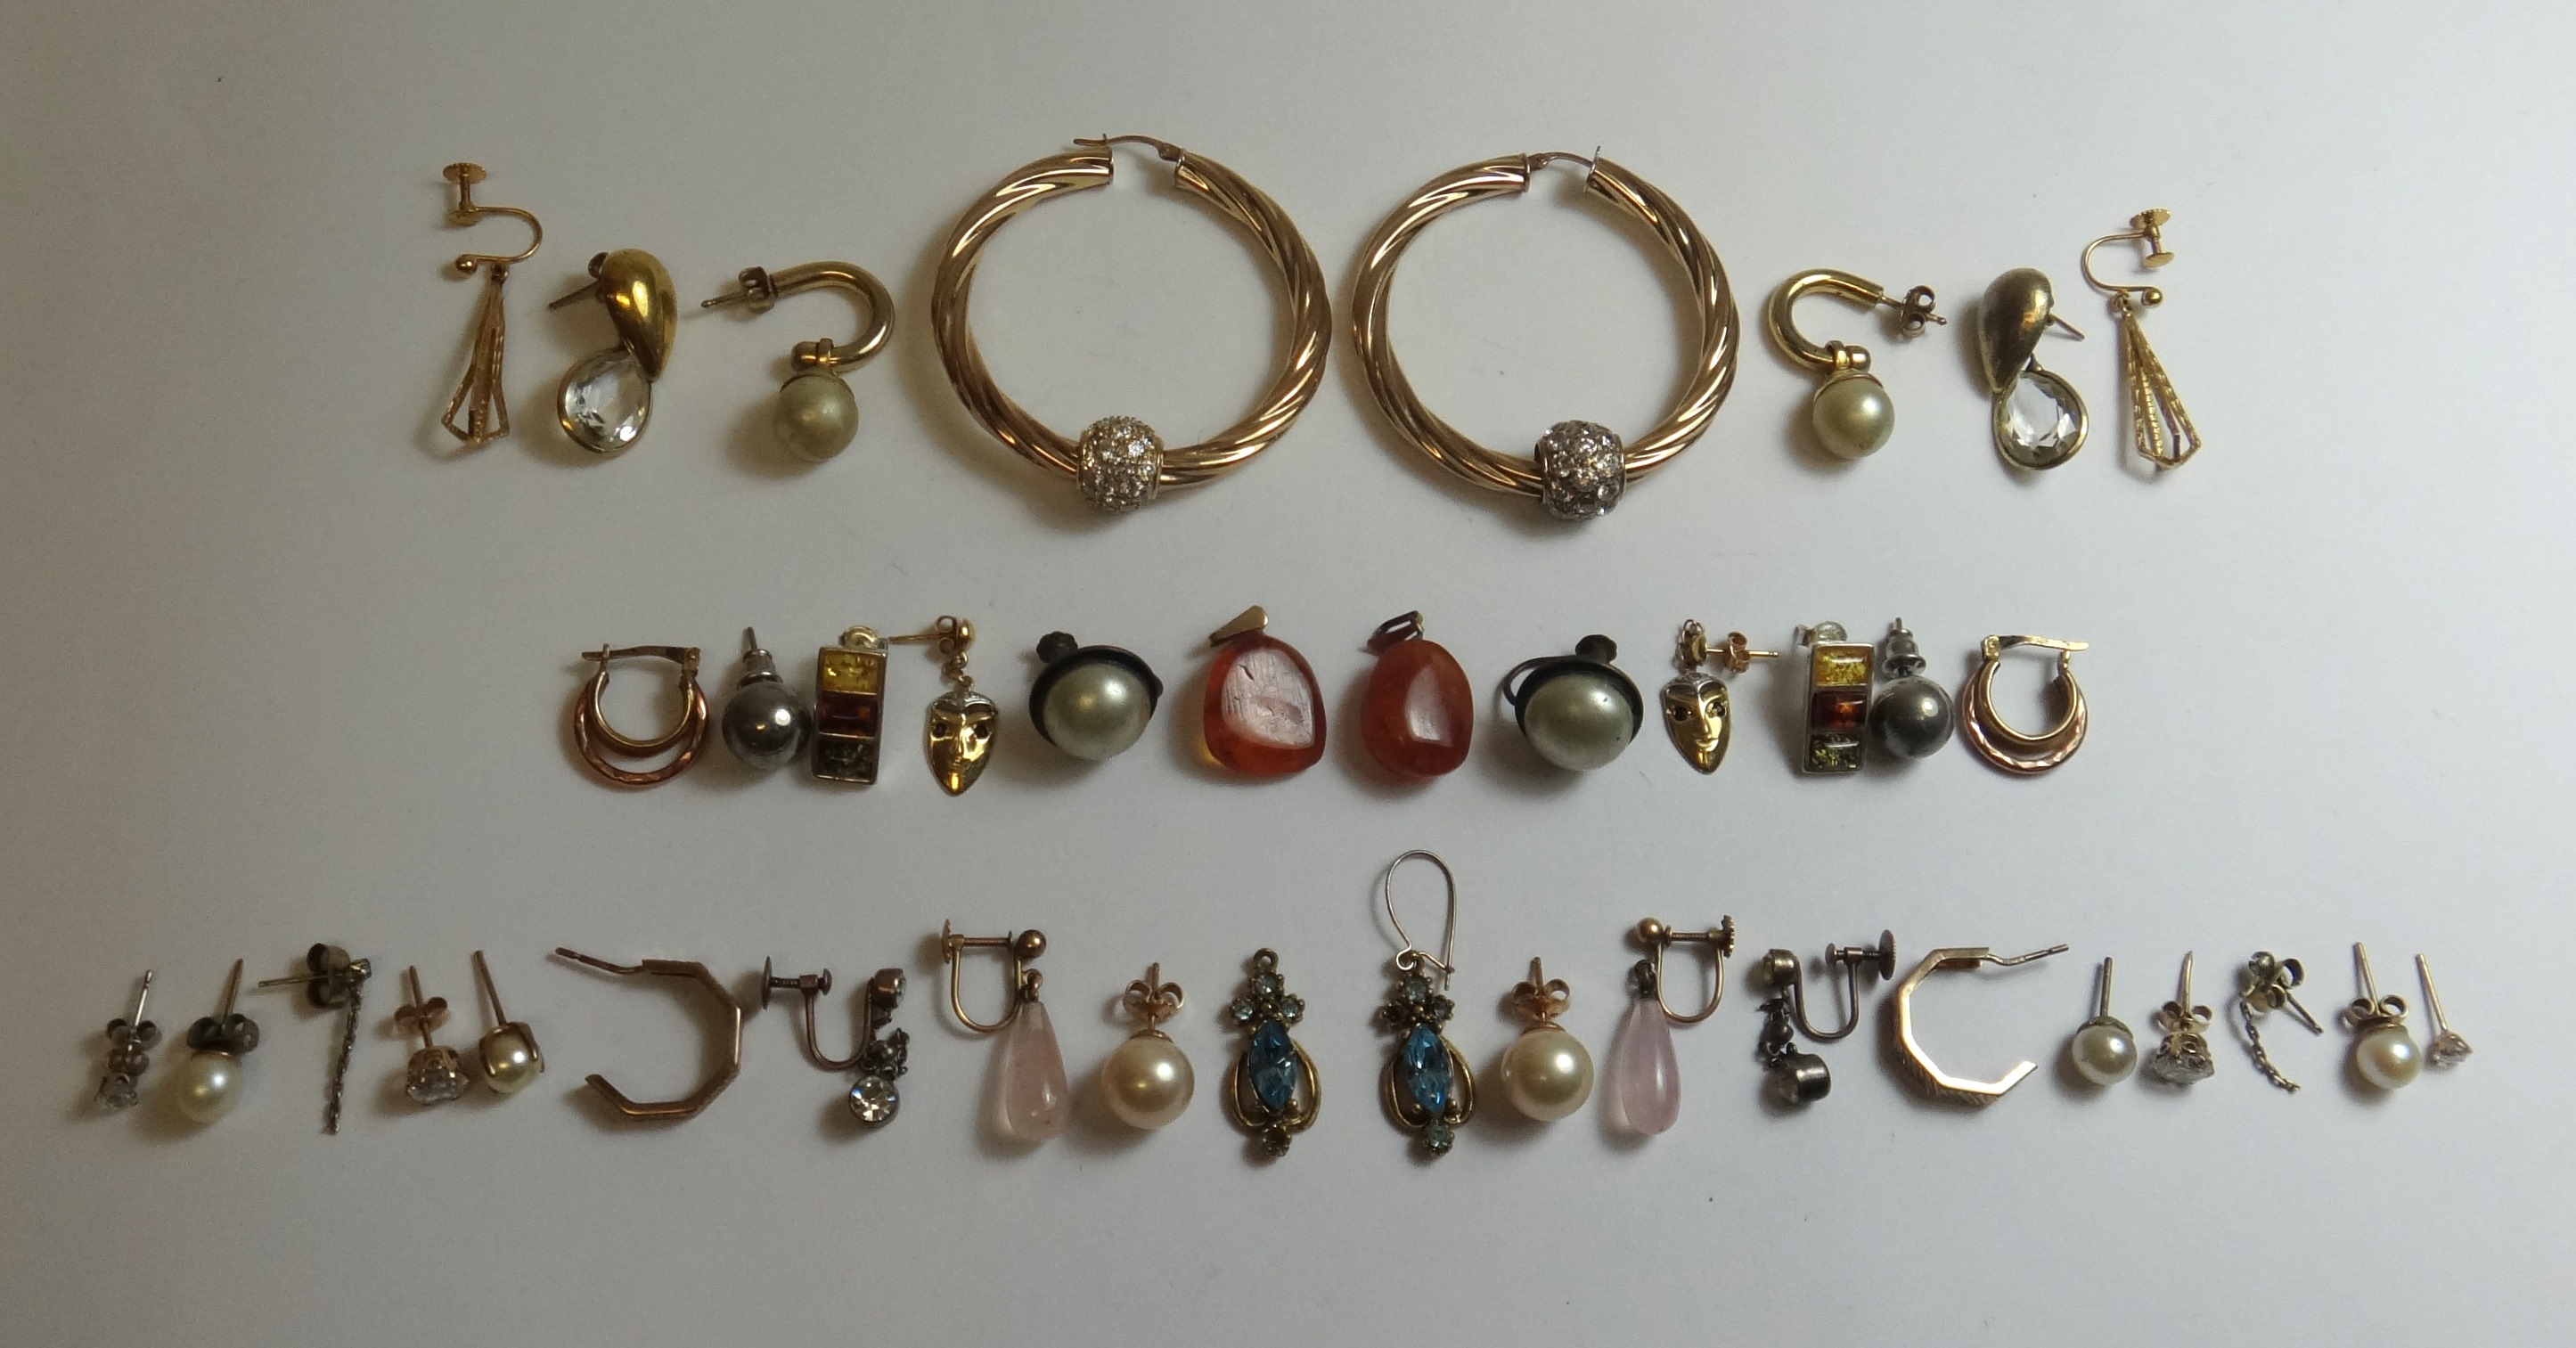 Twenty pairs of earrings, in a variety of designs.